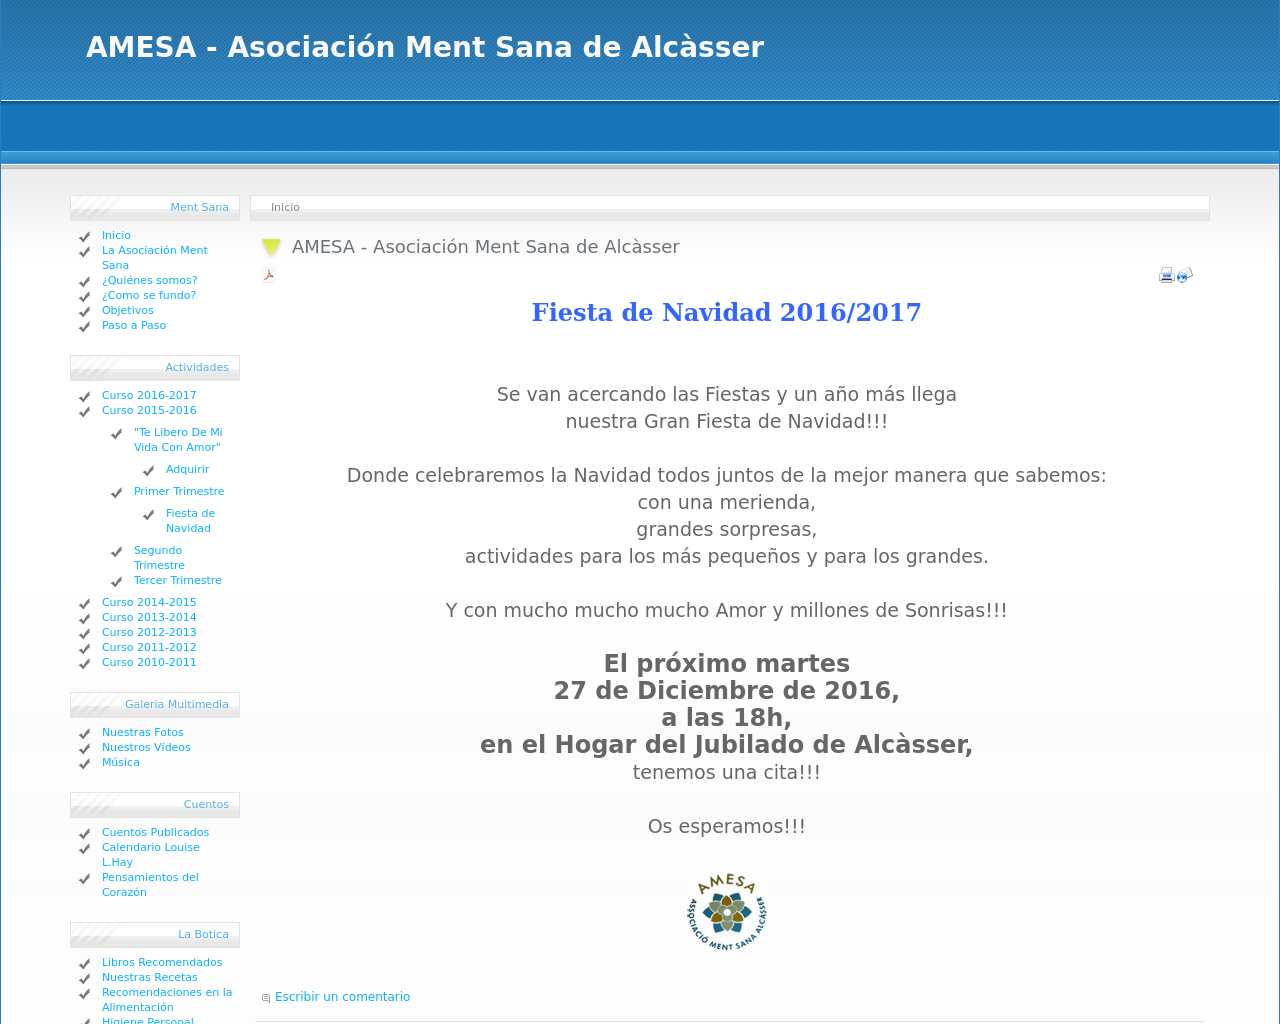 El sitio de la imagen amesa-alcasser.es en 1280x1024